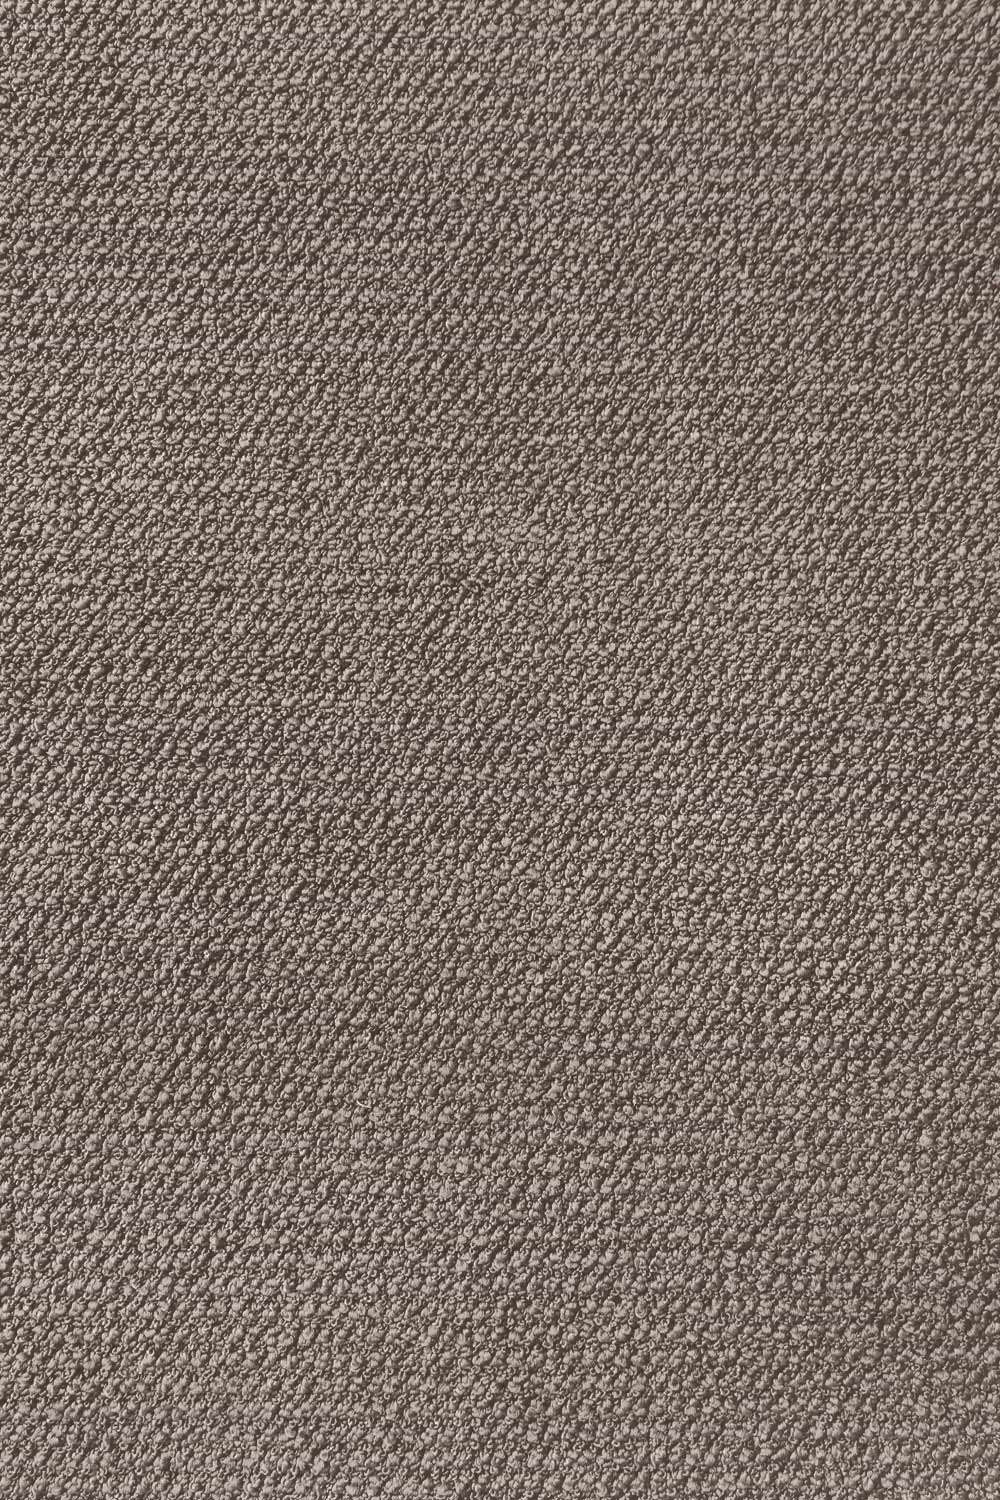 Metrážny koberec Corvino 39 400 cm